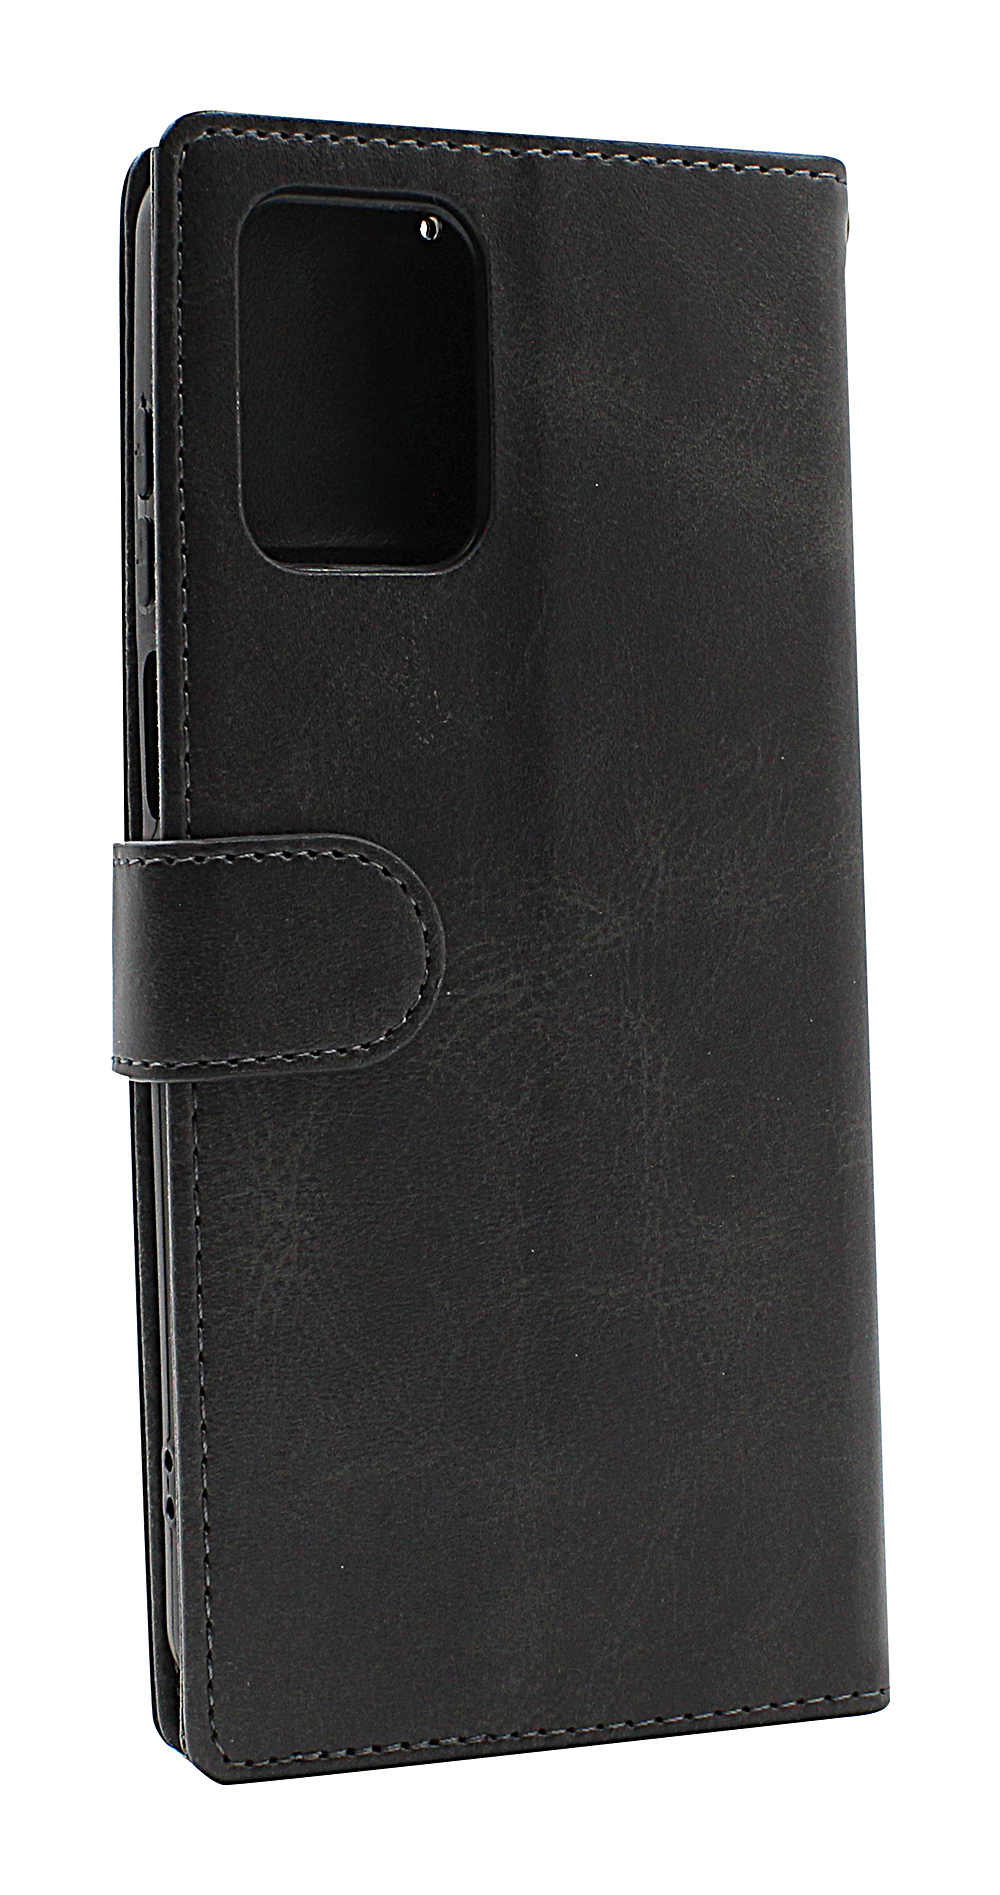 billigamobilskydd.seZipper Standcase Wallet Motorola Moto G73 5G